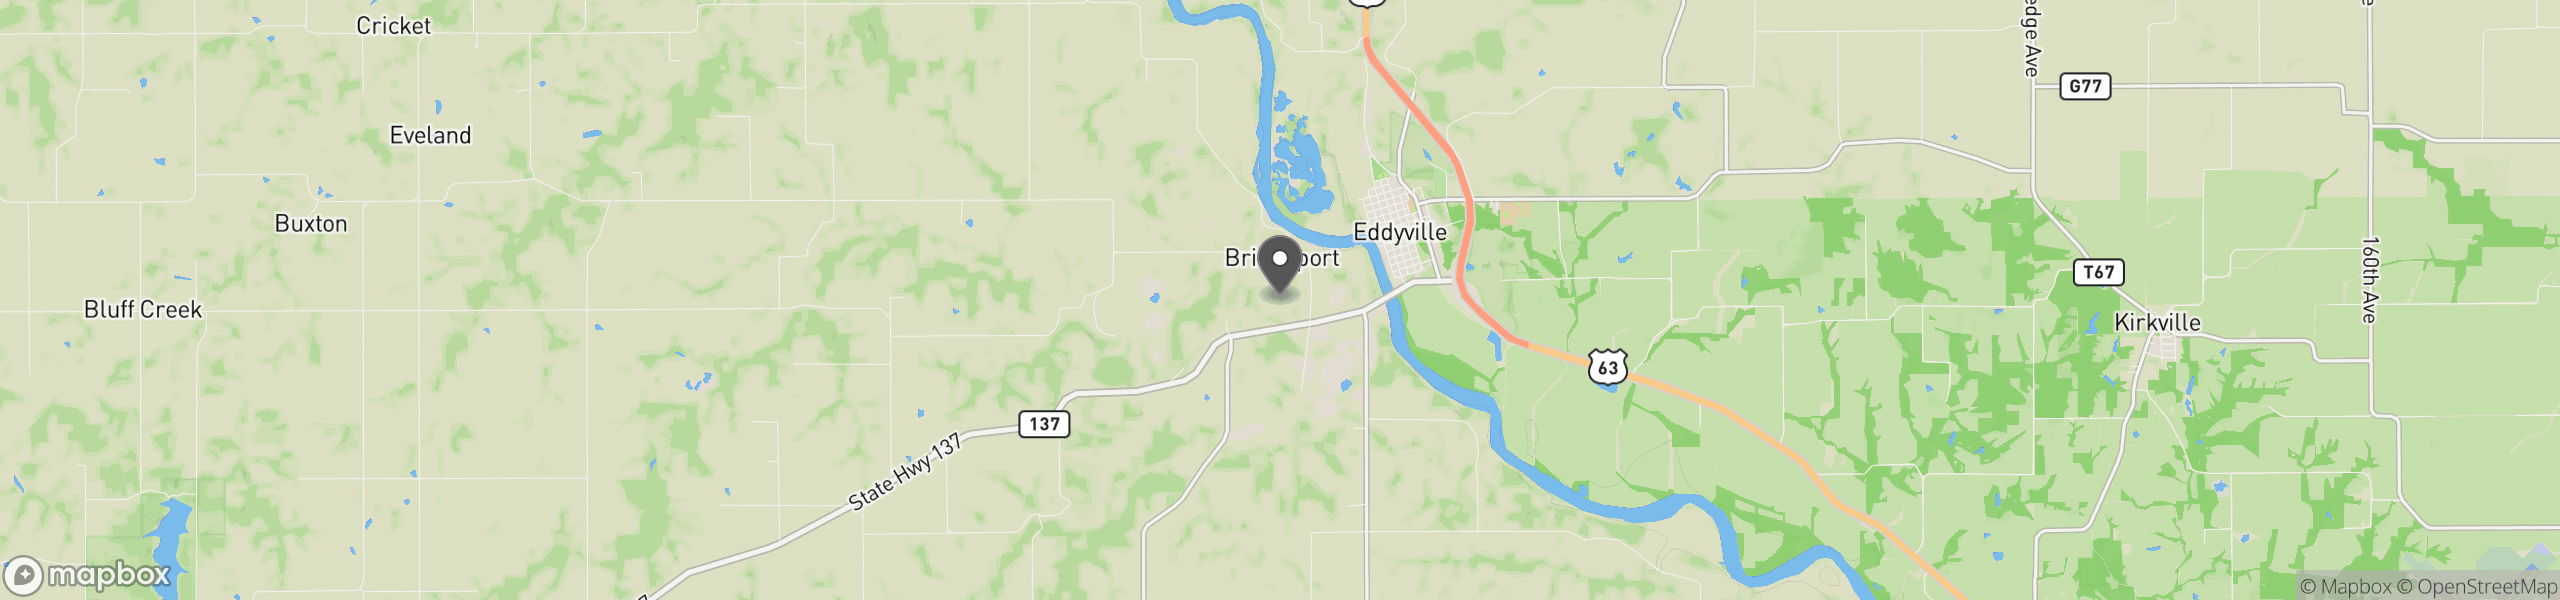 Eddyville, IA 52553